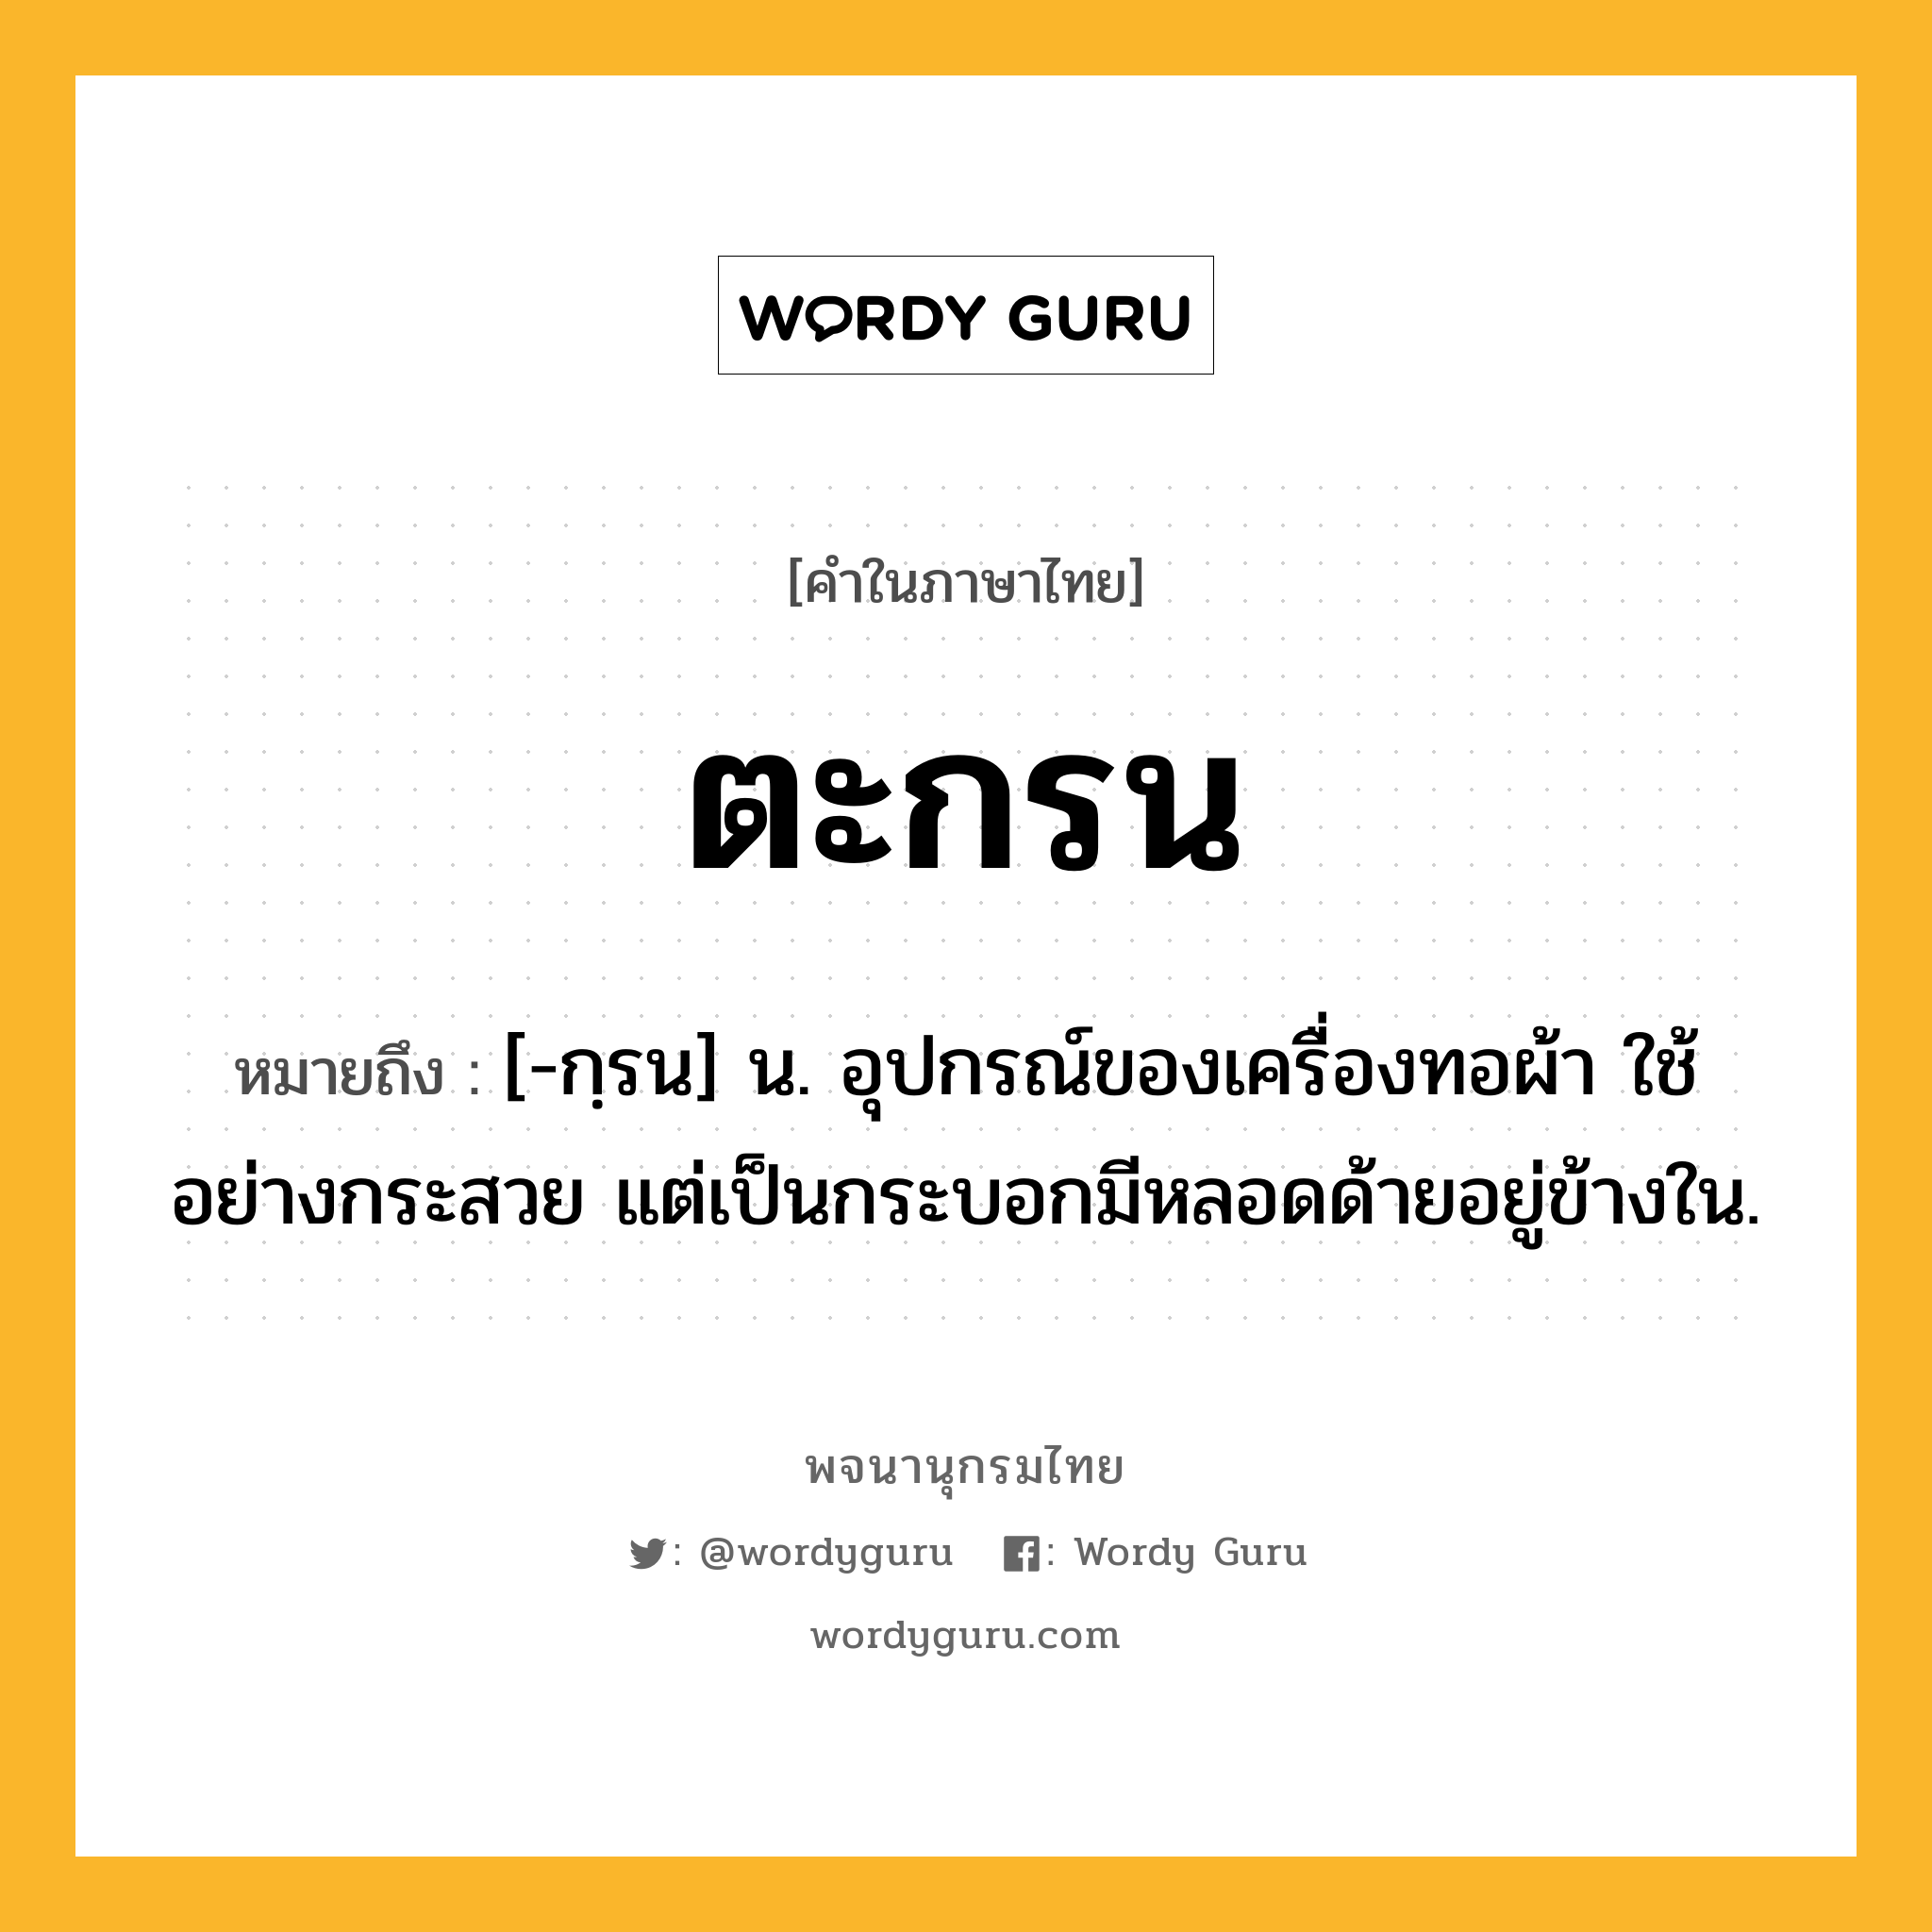 ตะกรน ความหมาย หมายถึงอะไร?, คำในภาษาไทย ตะกรน หมายถึง [-กฺรน] น. อุปกรณ์ของเครื่องทอผ้า ใช้อย่างกระสวย แต่เป็นกระบอกมีหลอดด้ายอยู่ข้างใน.